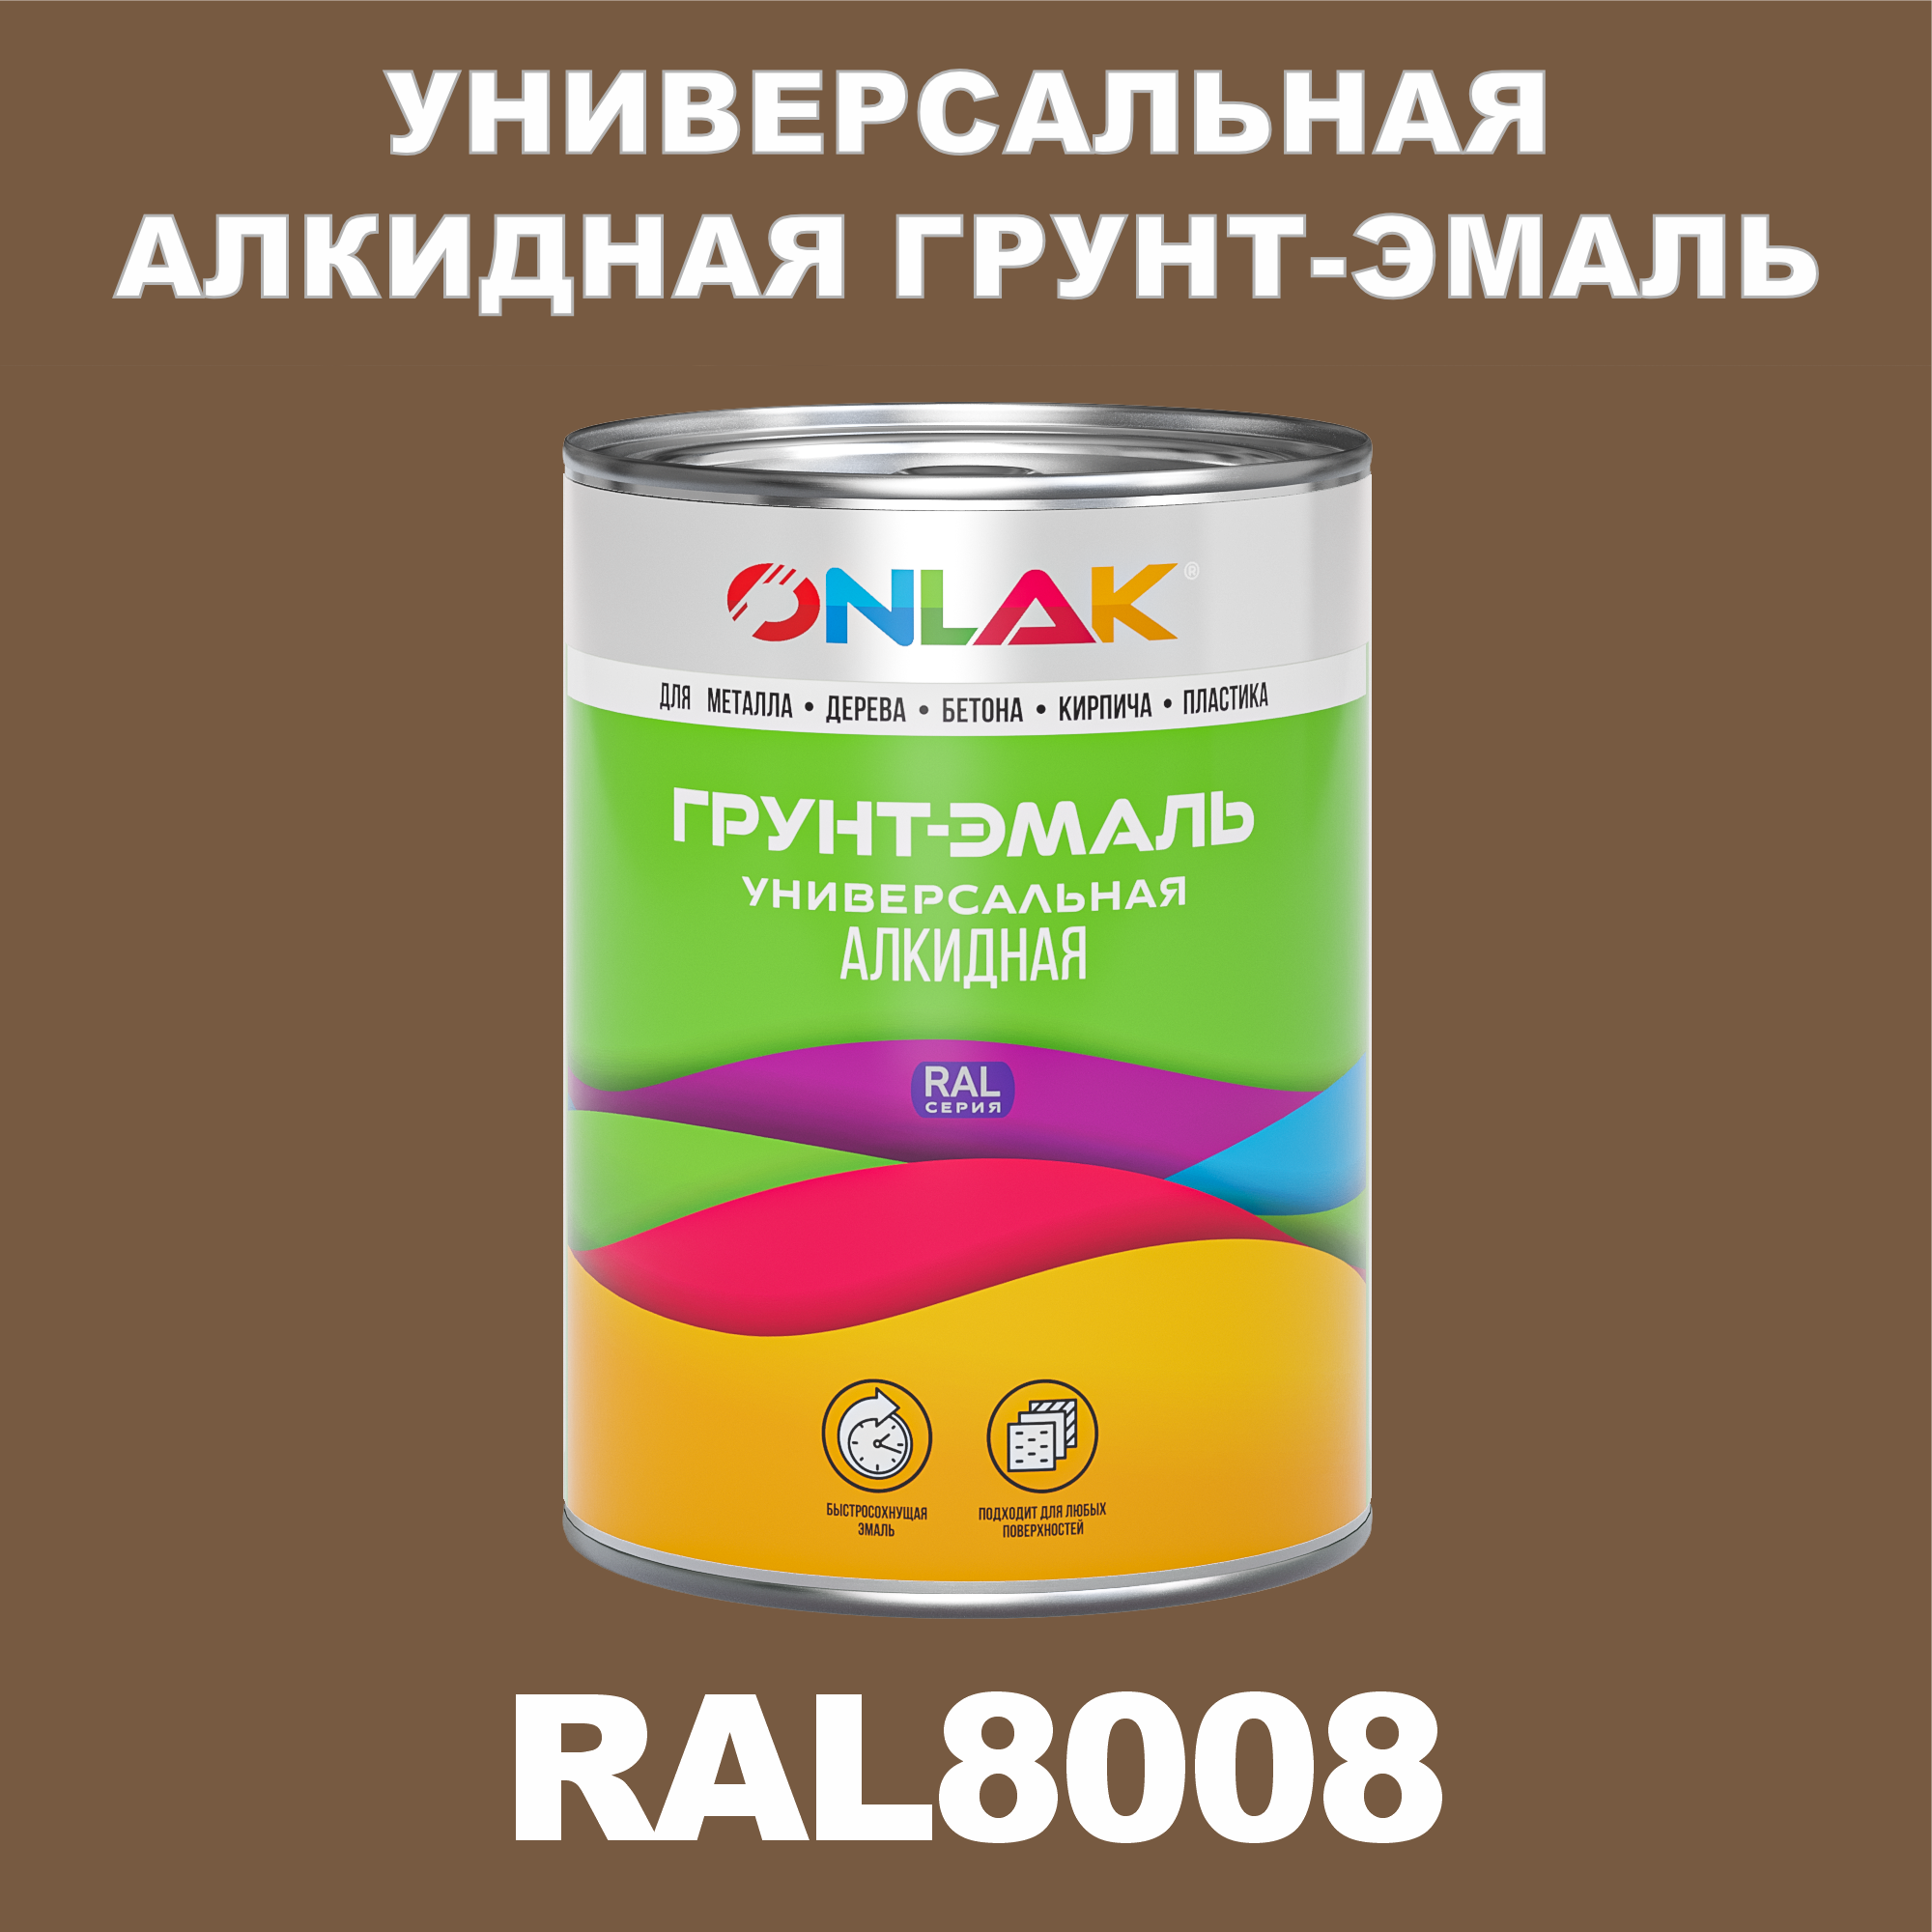 Грунт-эмаль ONLAK 1К RAL8008 антикоррозионная алкидная по металлу по ржавчине 1 кг